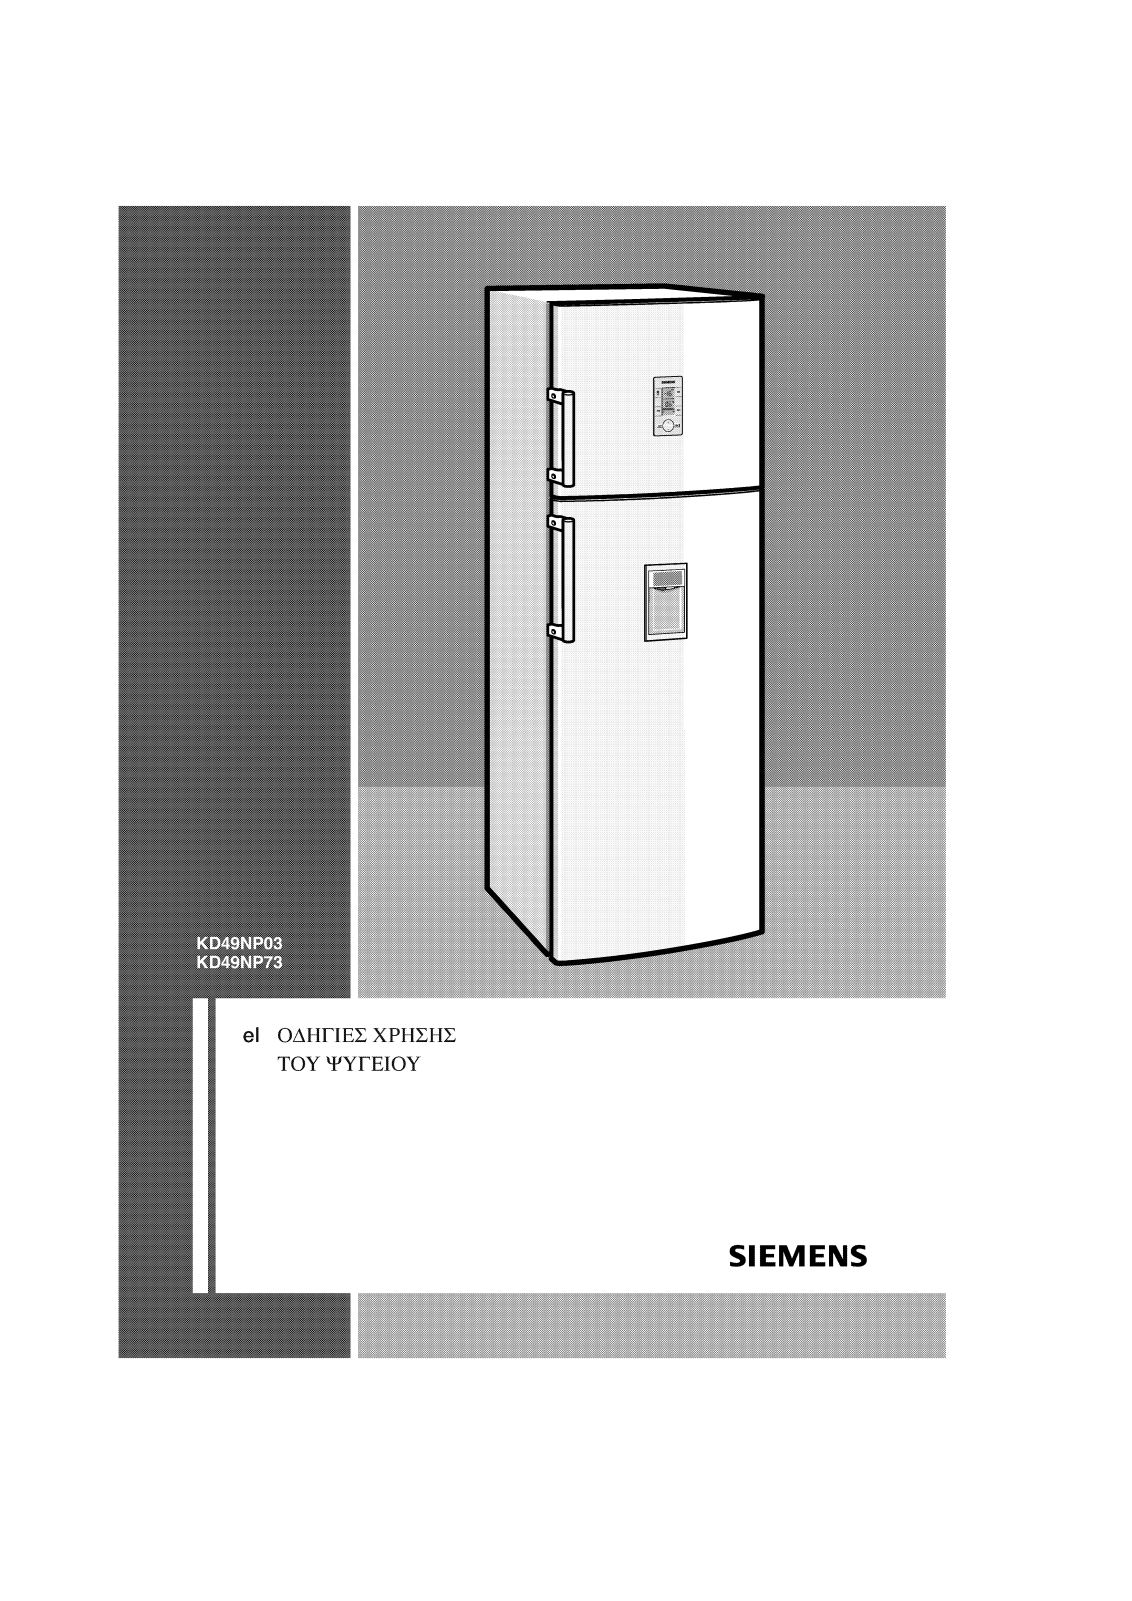 Siemens KD49NP03 Manual